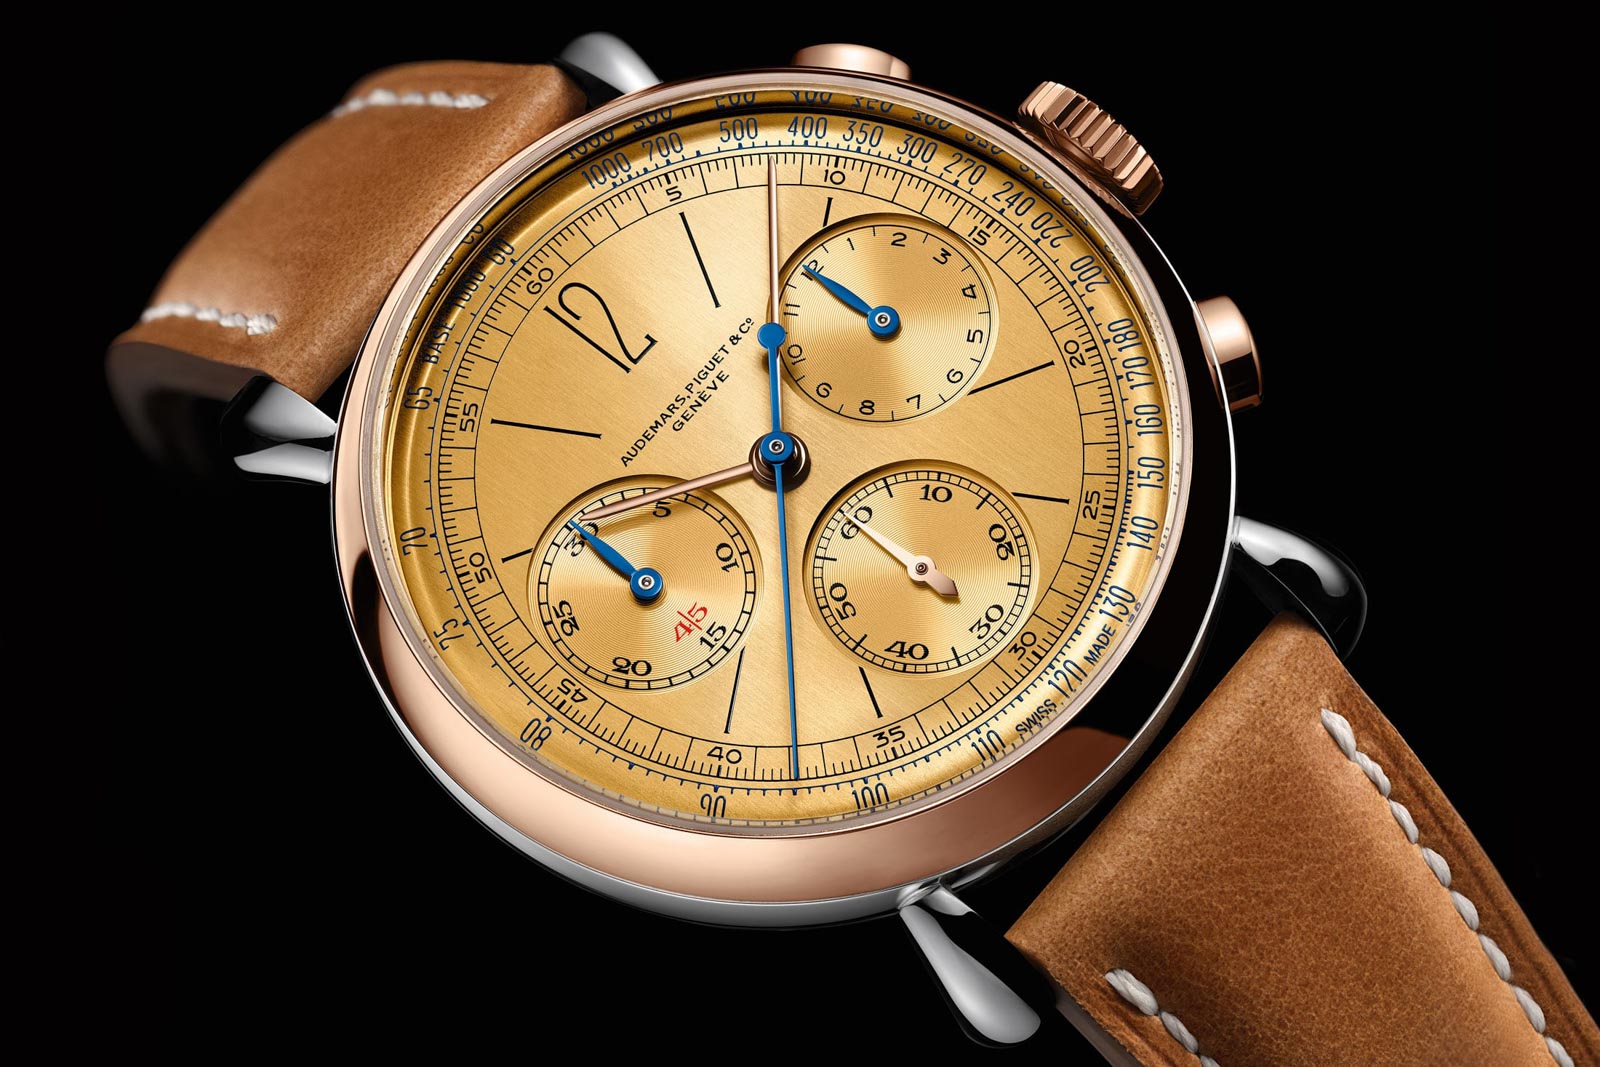 Audemars Piguet Remaster01 Self-Winding Chronograph replica Watch